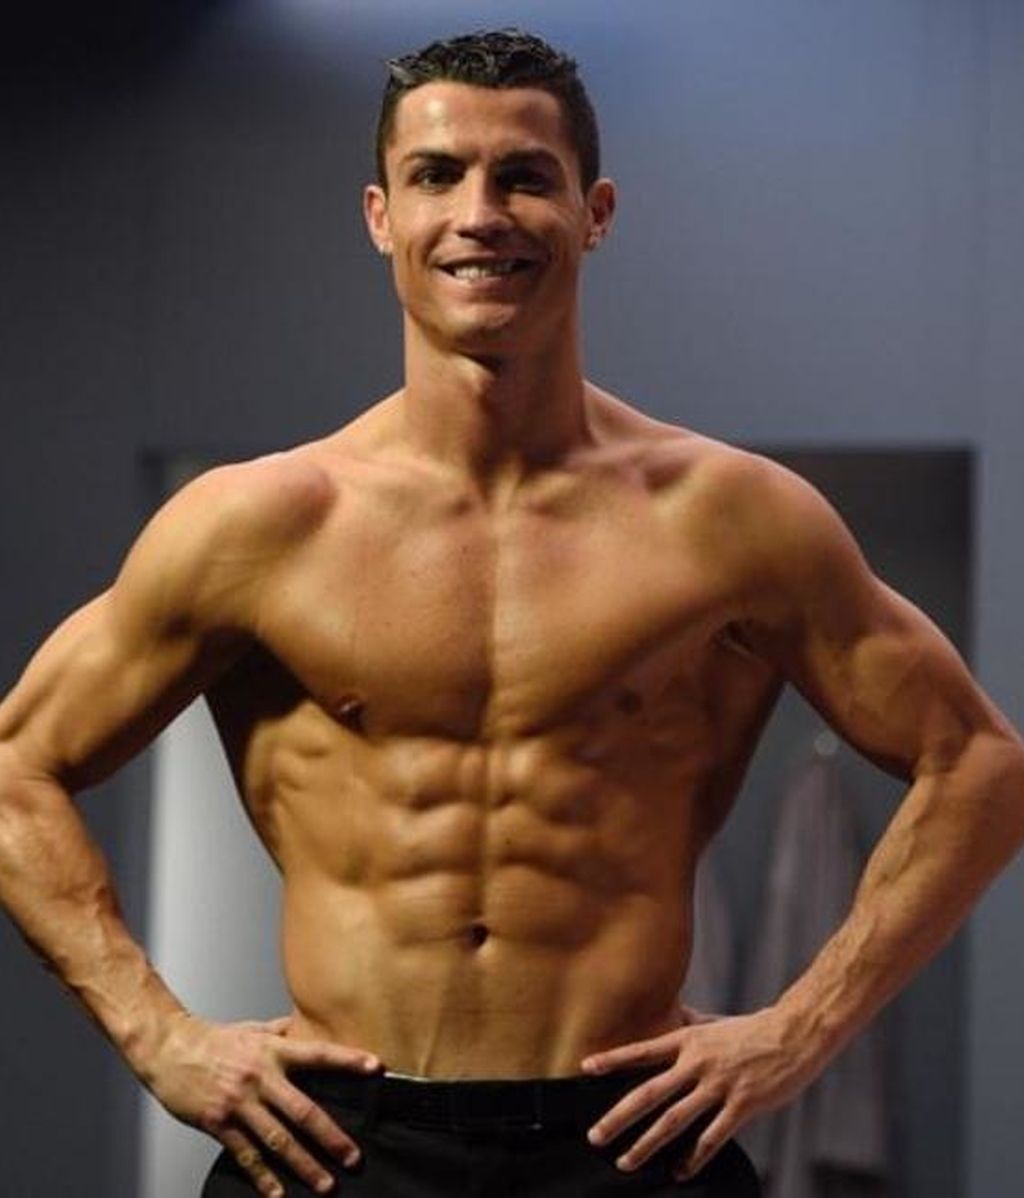 El anuncio 'hot' de Cristiano Ronaldo que ha desatado un conflicto  diplomático en Twitter